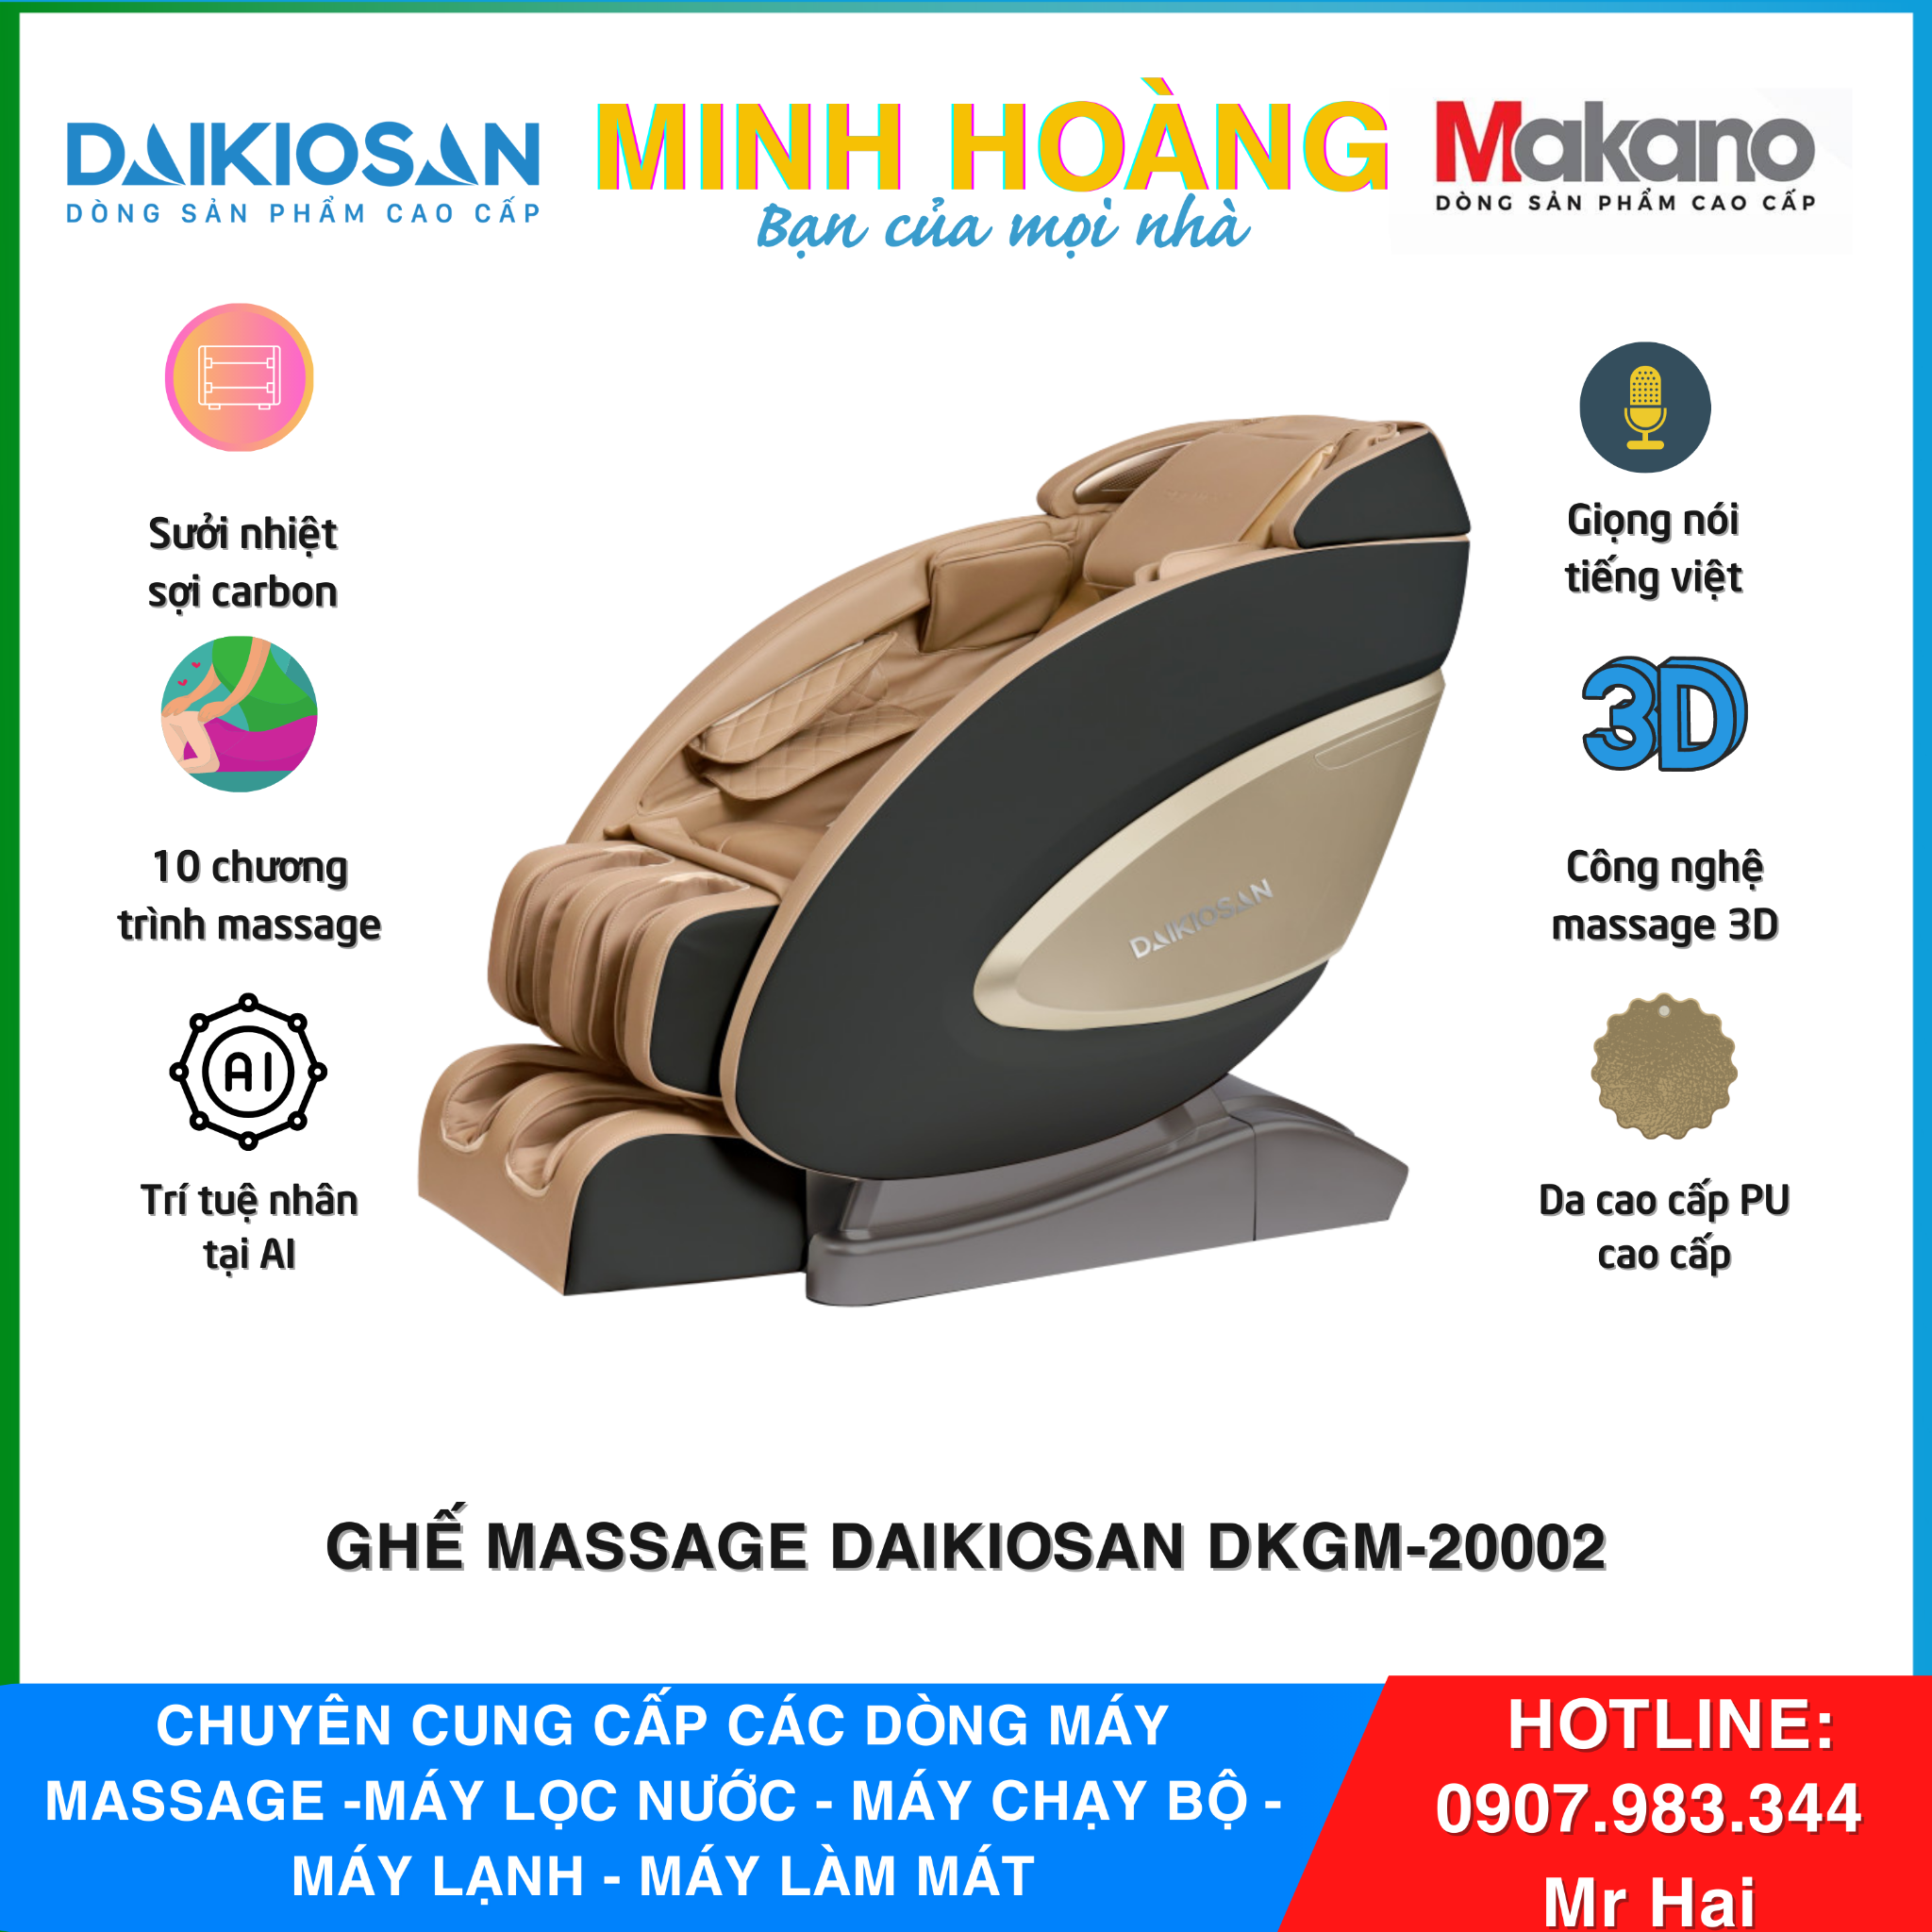  Ghế massage Daikiosan DKGM-20002 